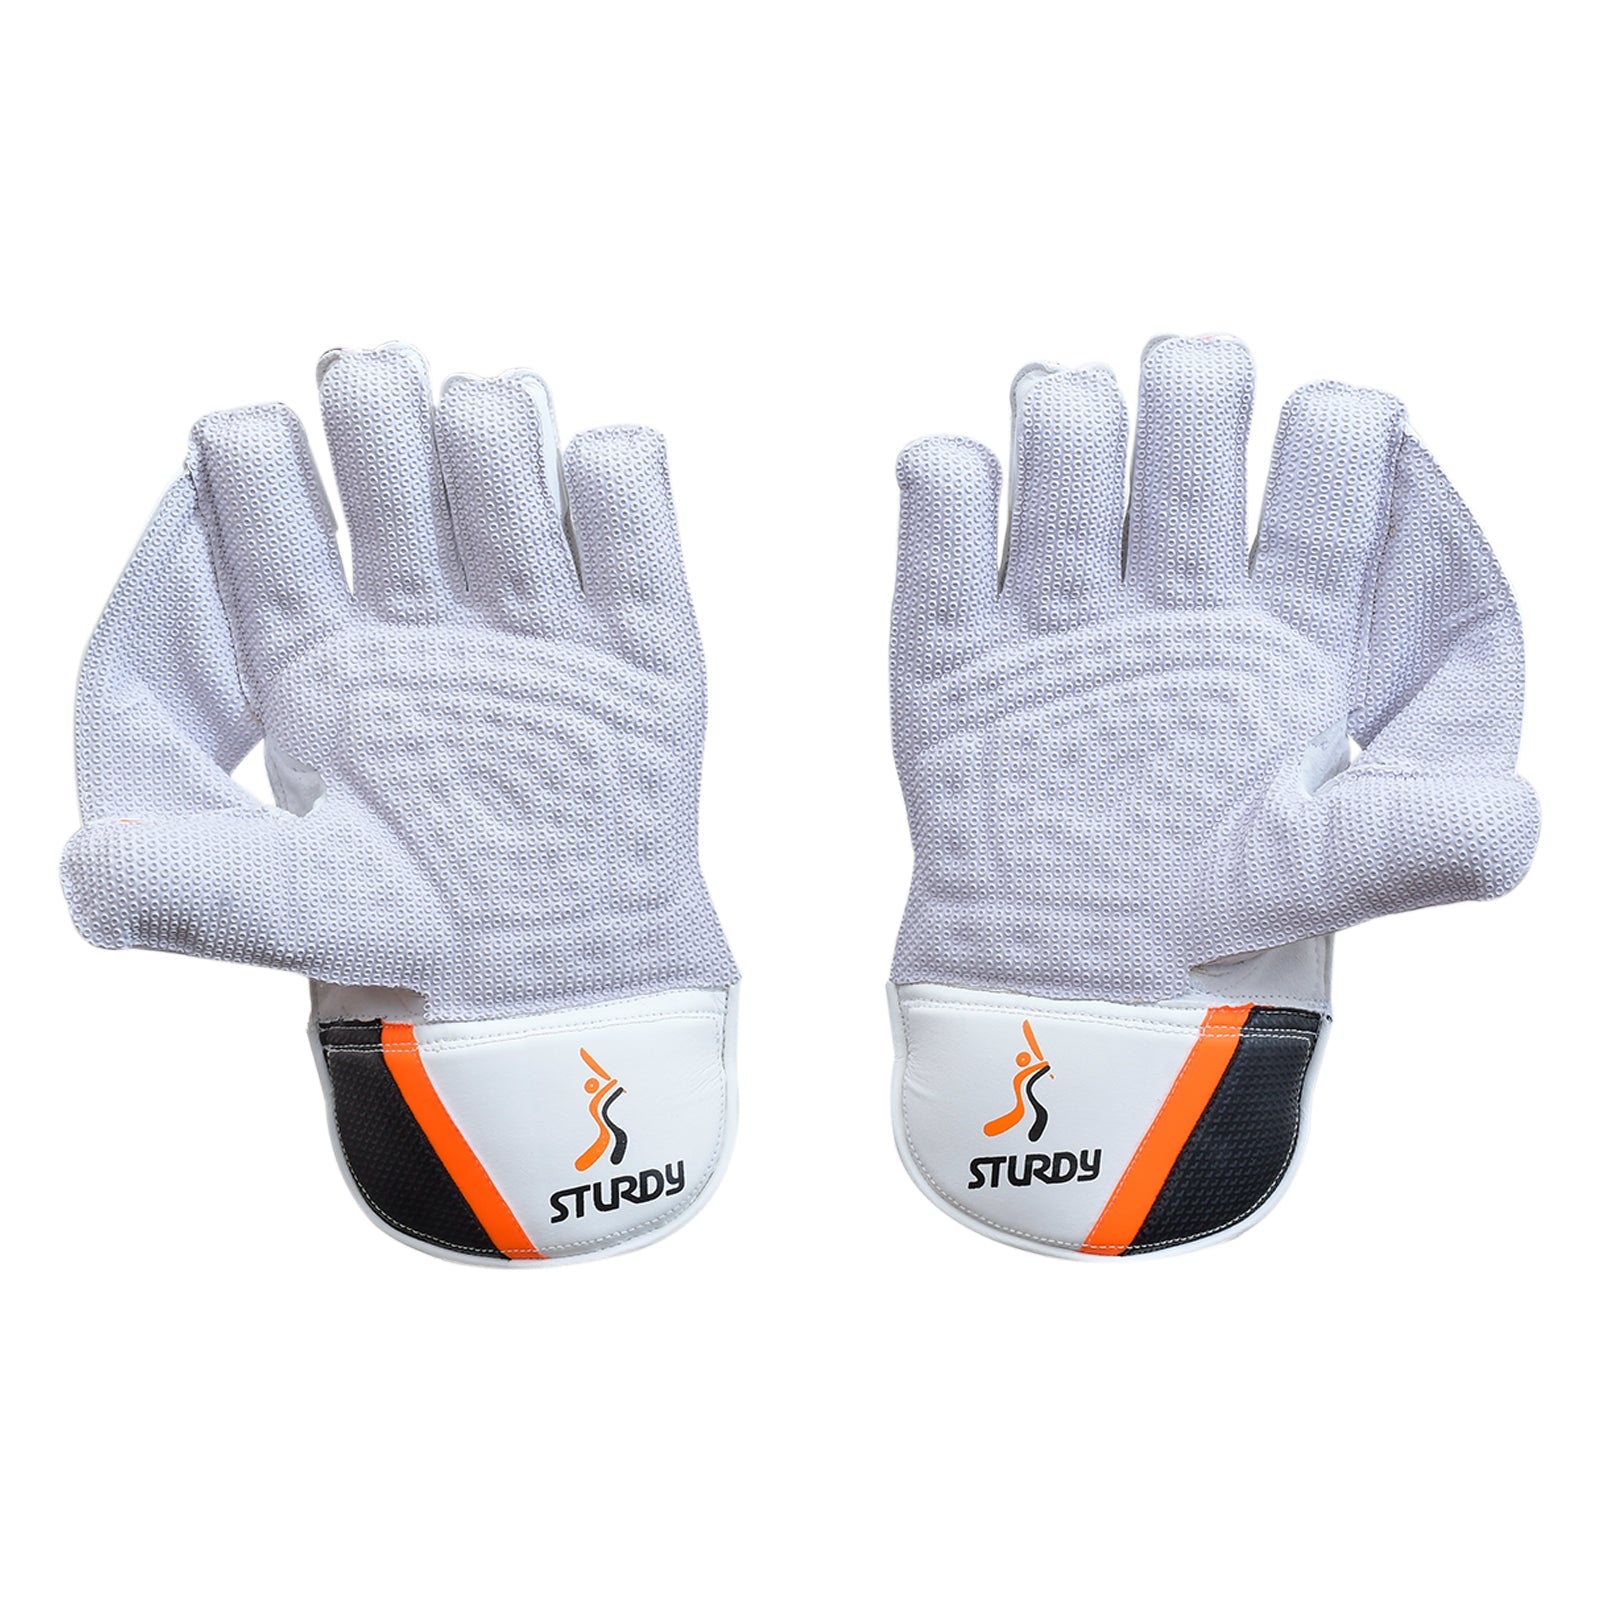 Sturdy Komodo Keeping Cricket Gloves - Senior